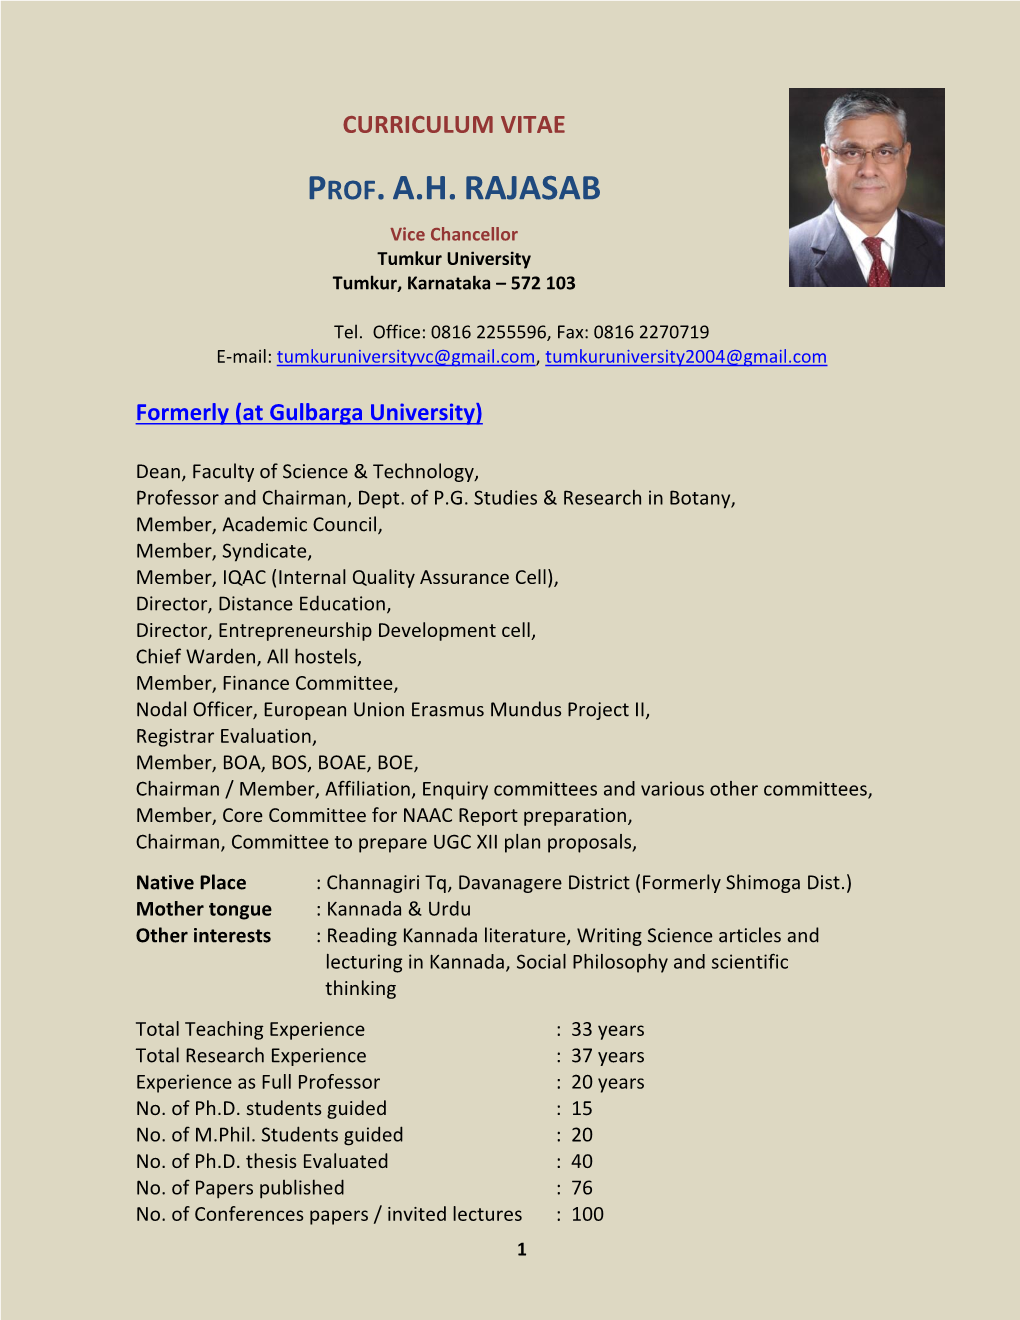 Prof.A.H.Rajasab